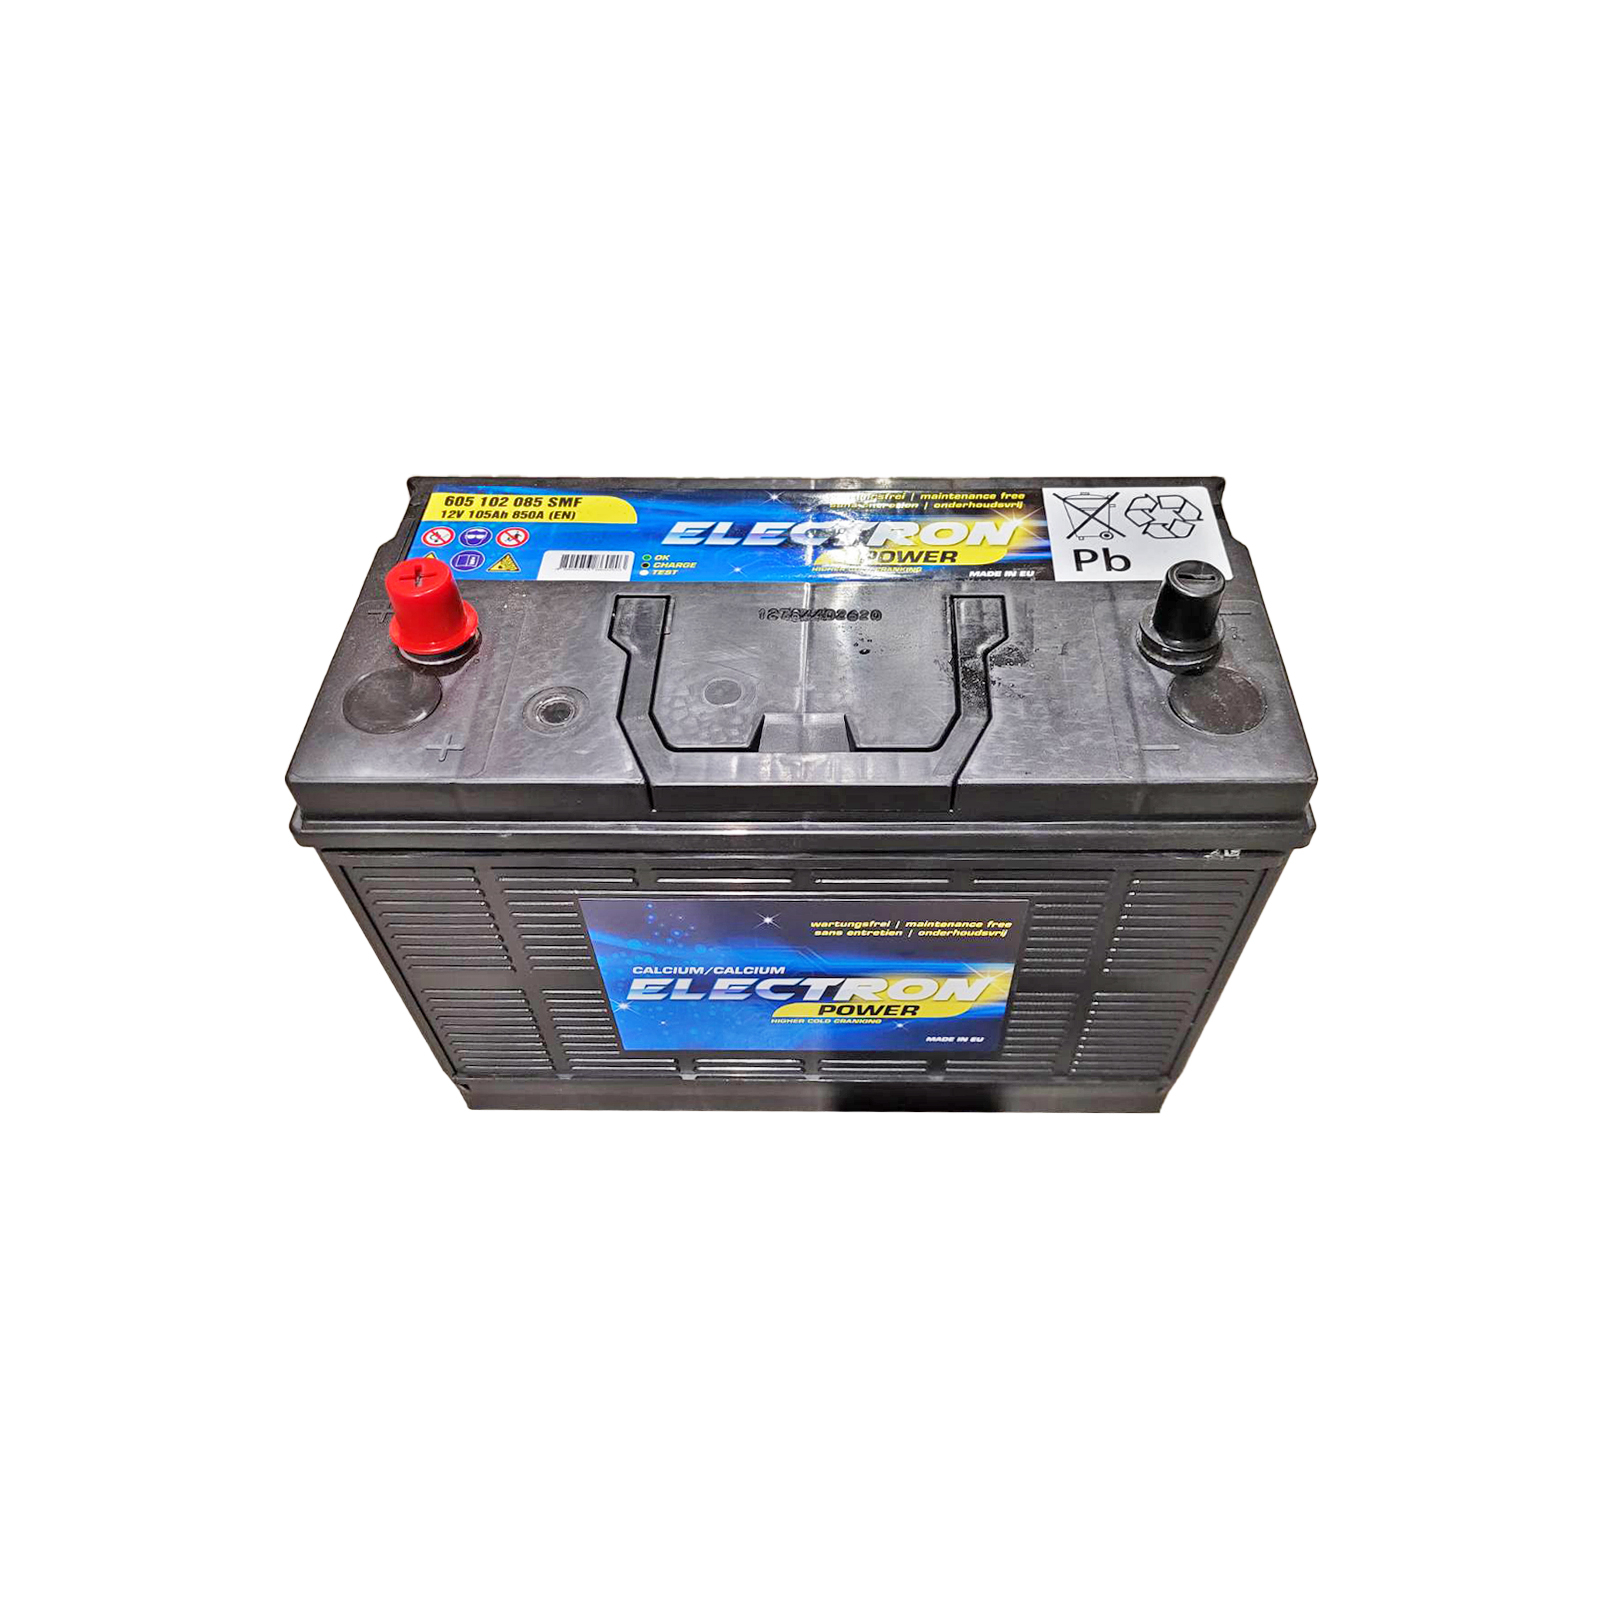 Аккумулятор автомобильный ELECTRON TRUCK HD SMF 105Ah клеми по центру (850EN) (605 102 085 SMF)